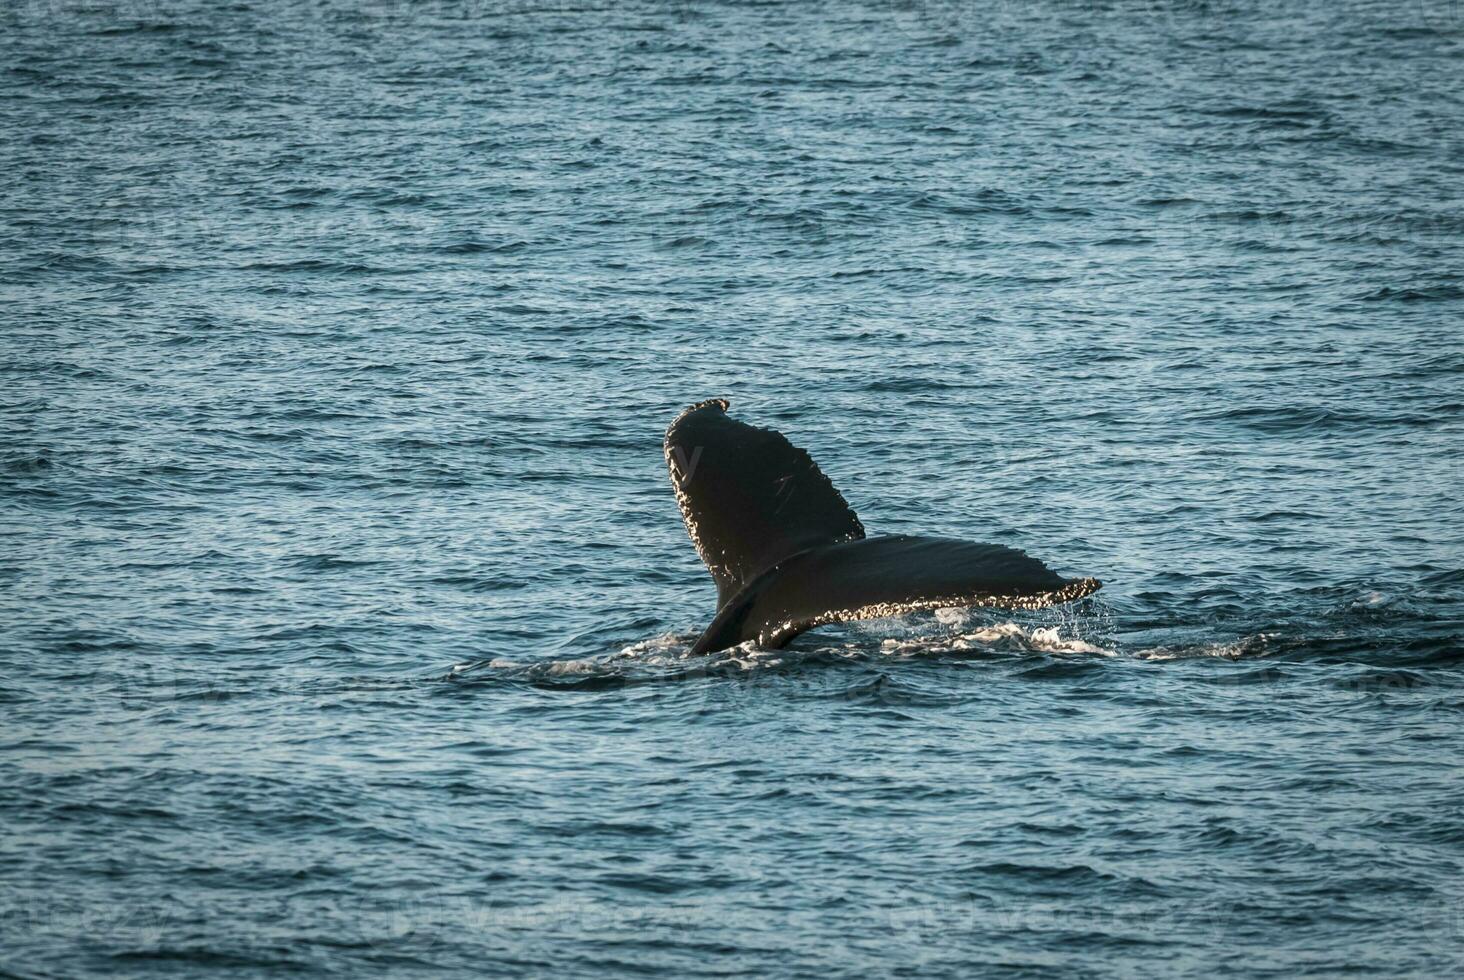 Humpback whale diving,Megaptera novaeangliae,Antrtica. photo